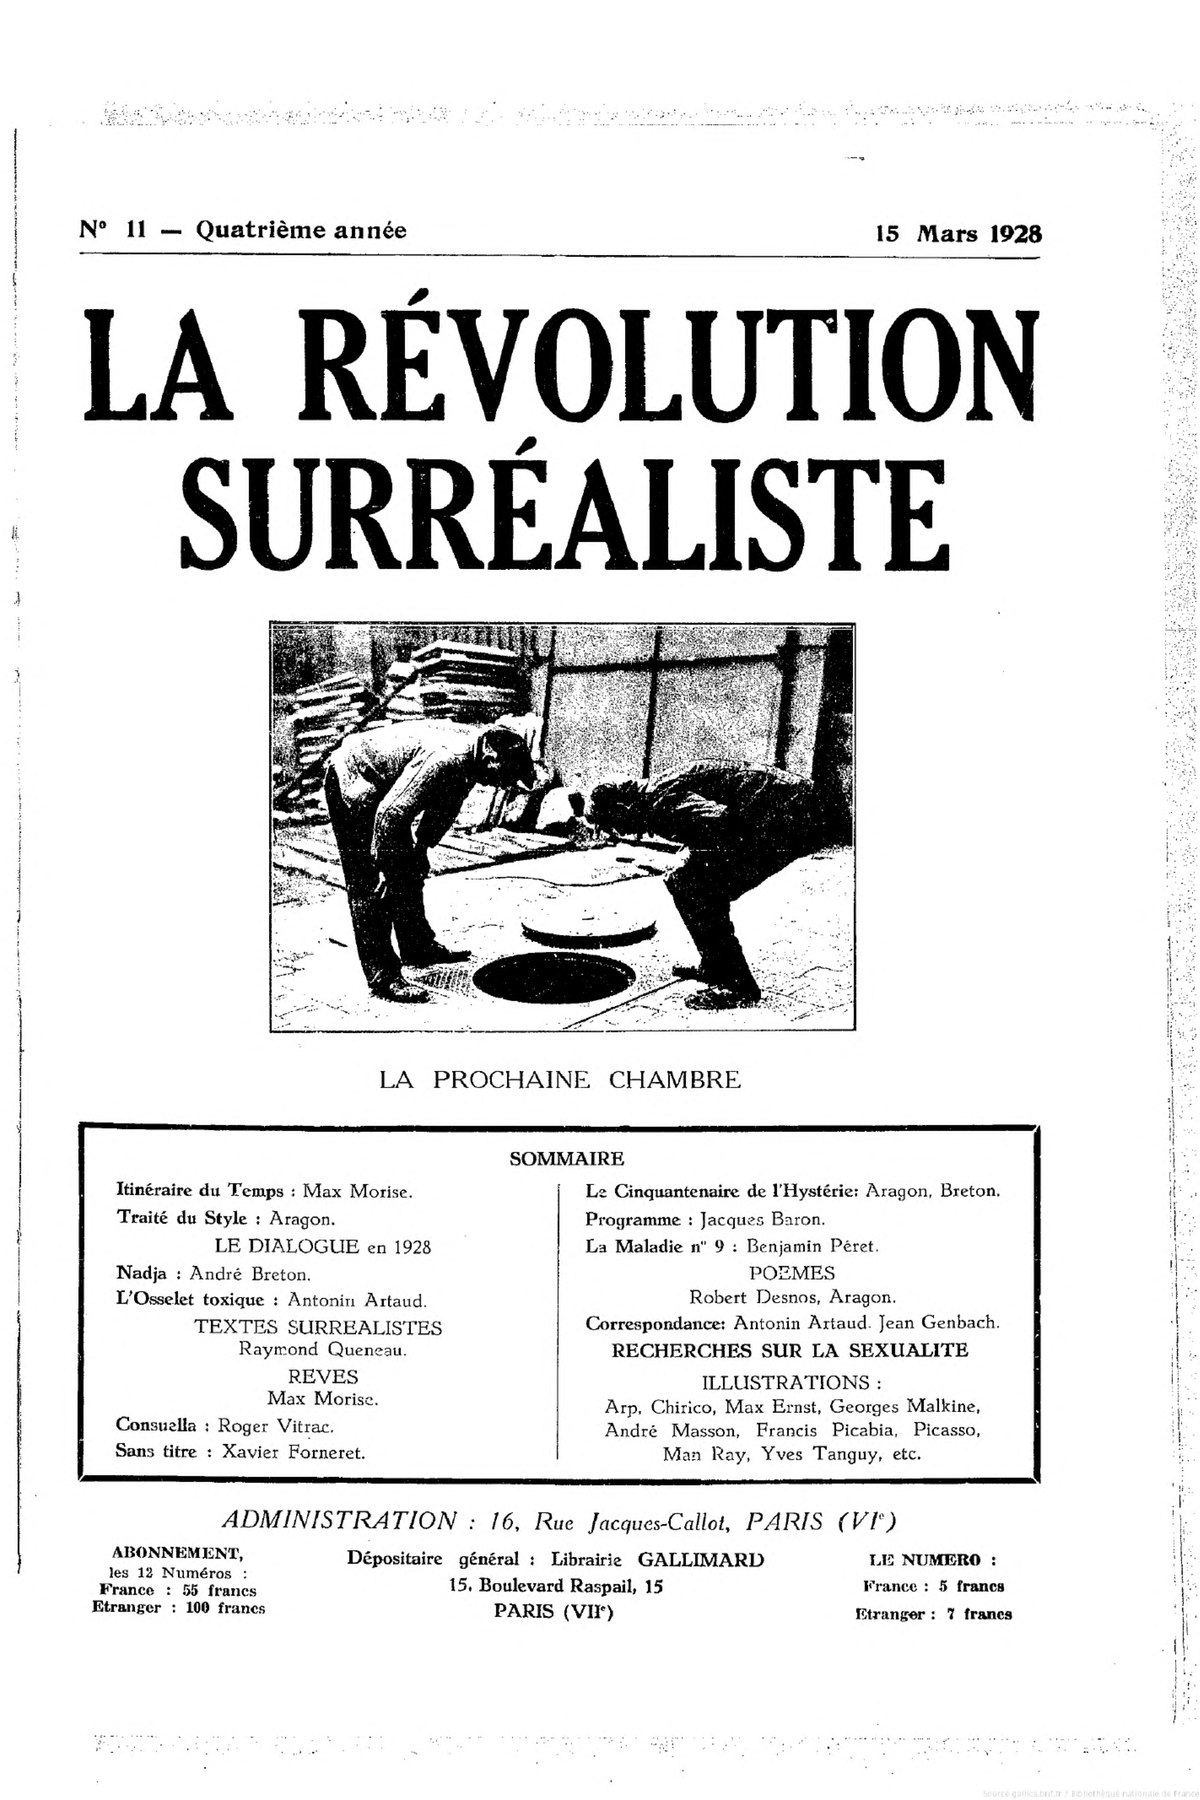 File:La Révolution surréaliste, n11, 1928.djvu - Wikimedia Commons